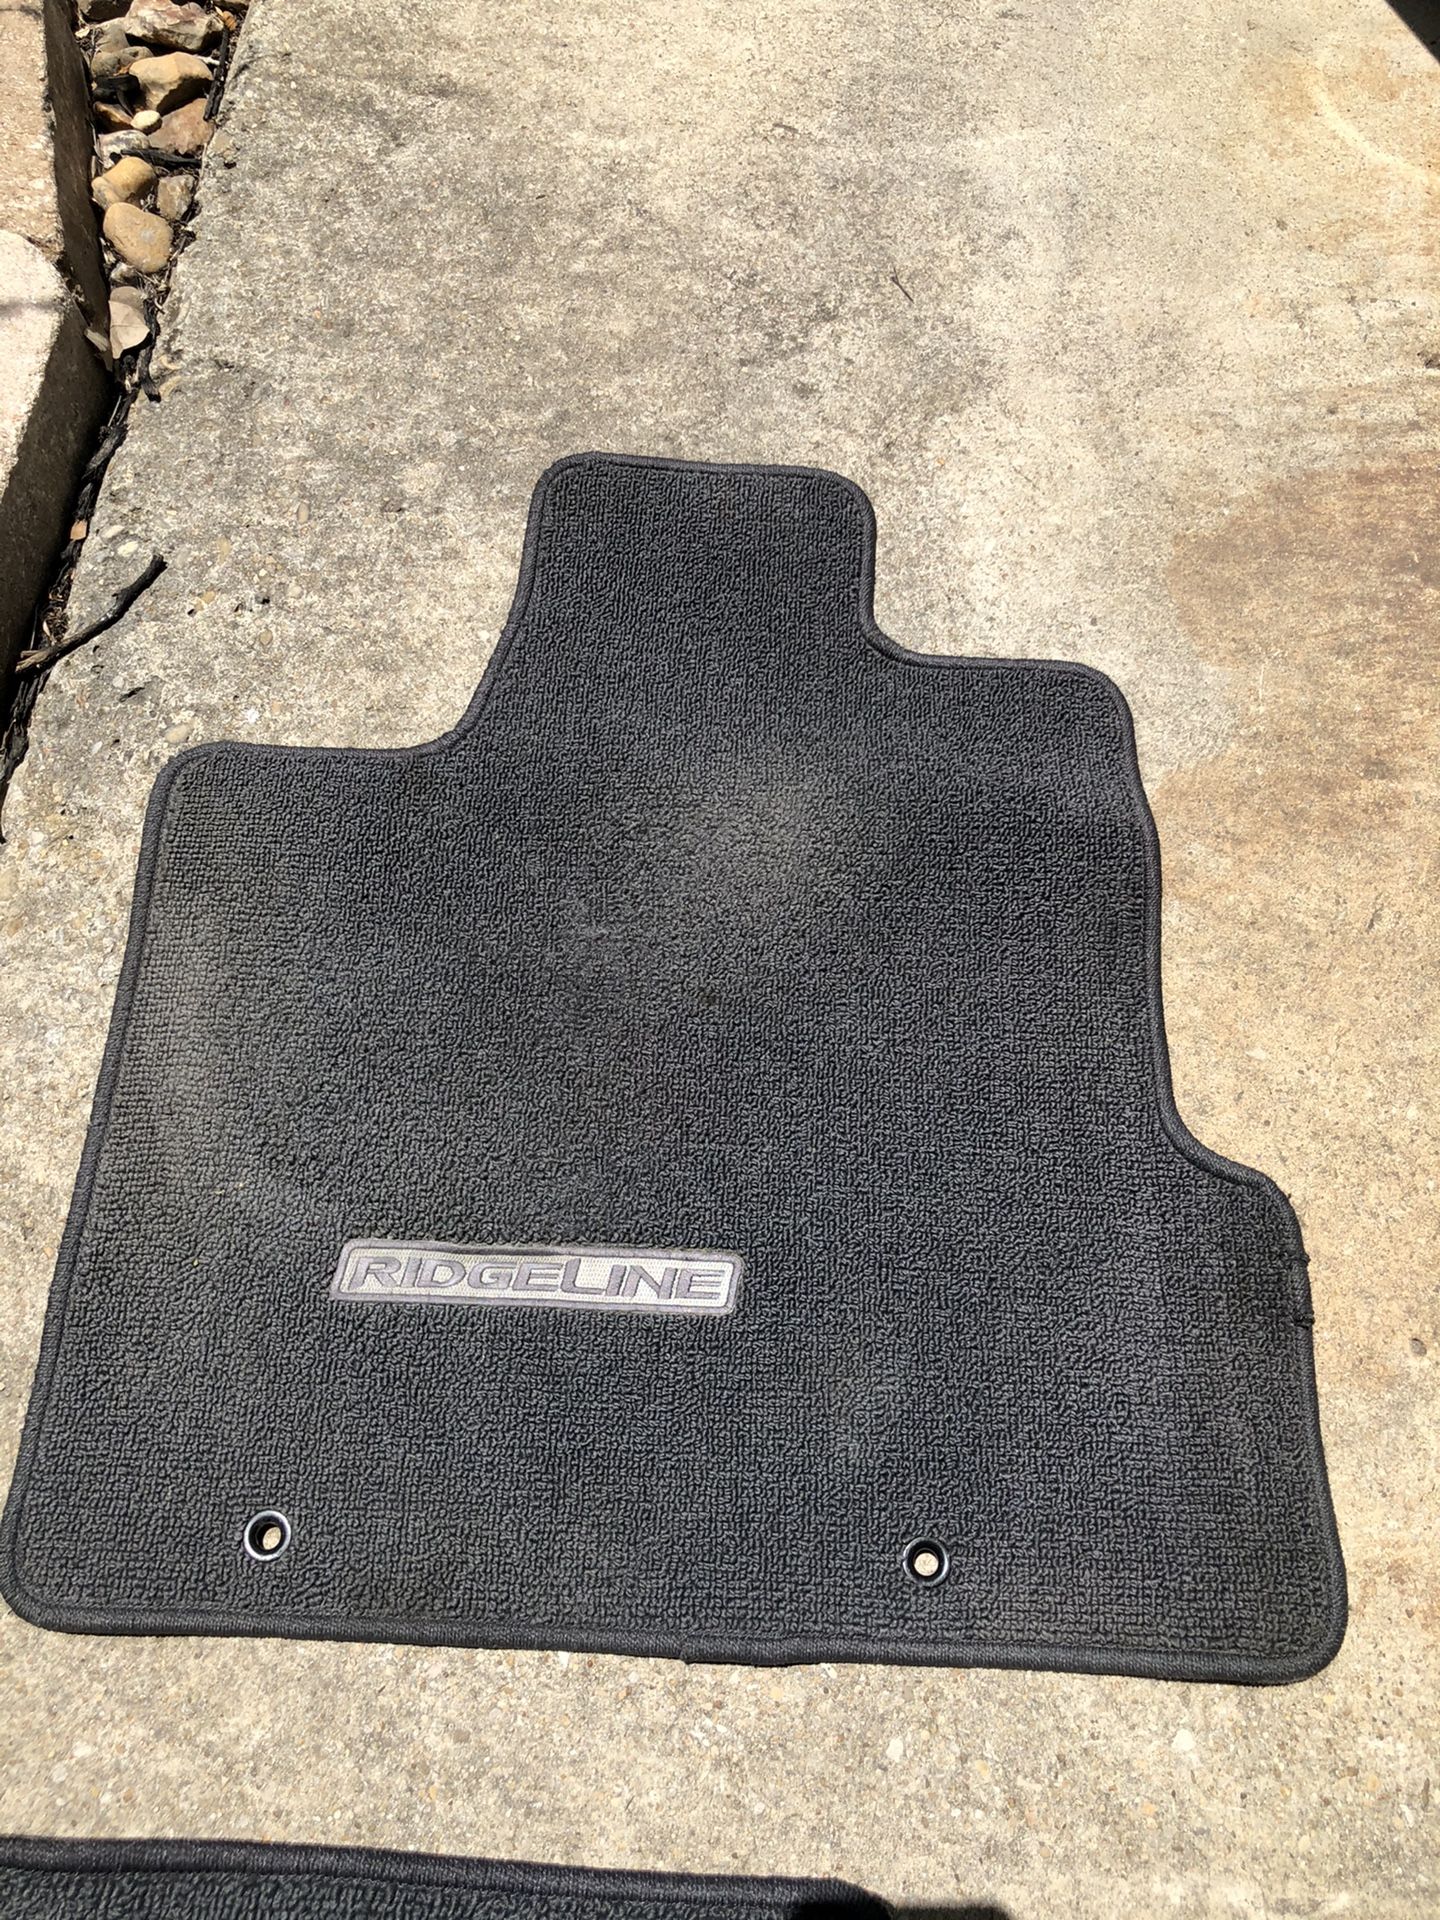 Honda Ridgeline floor mats